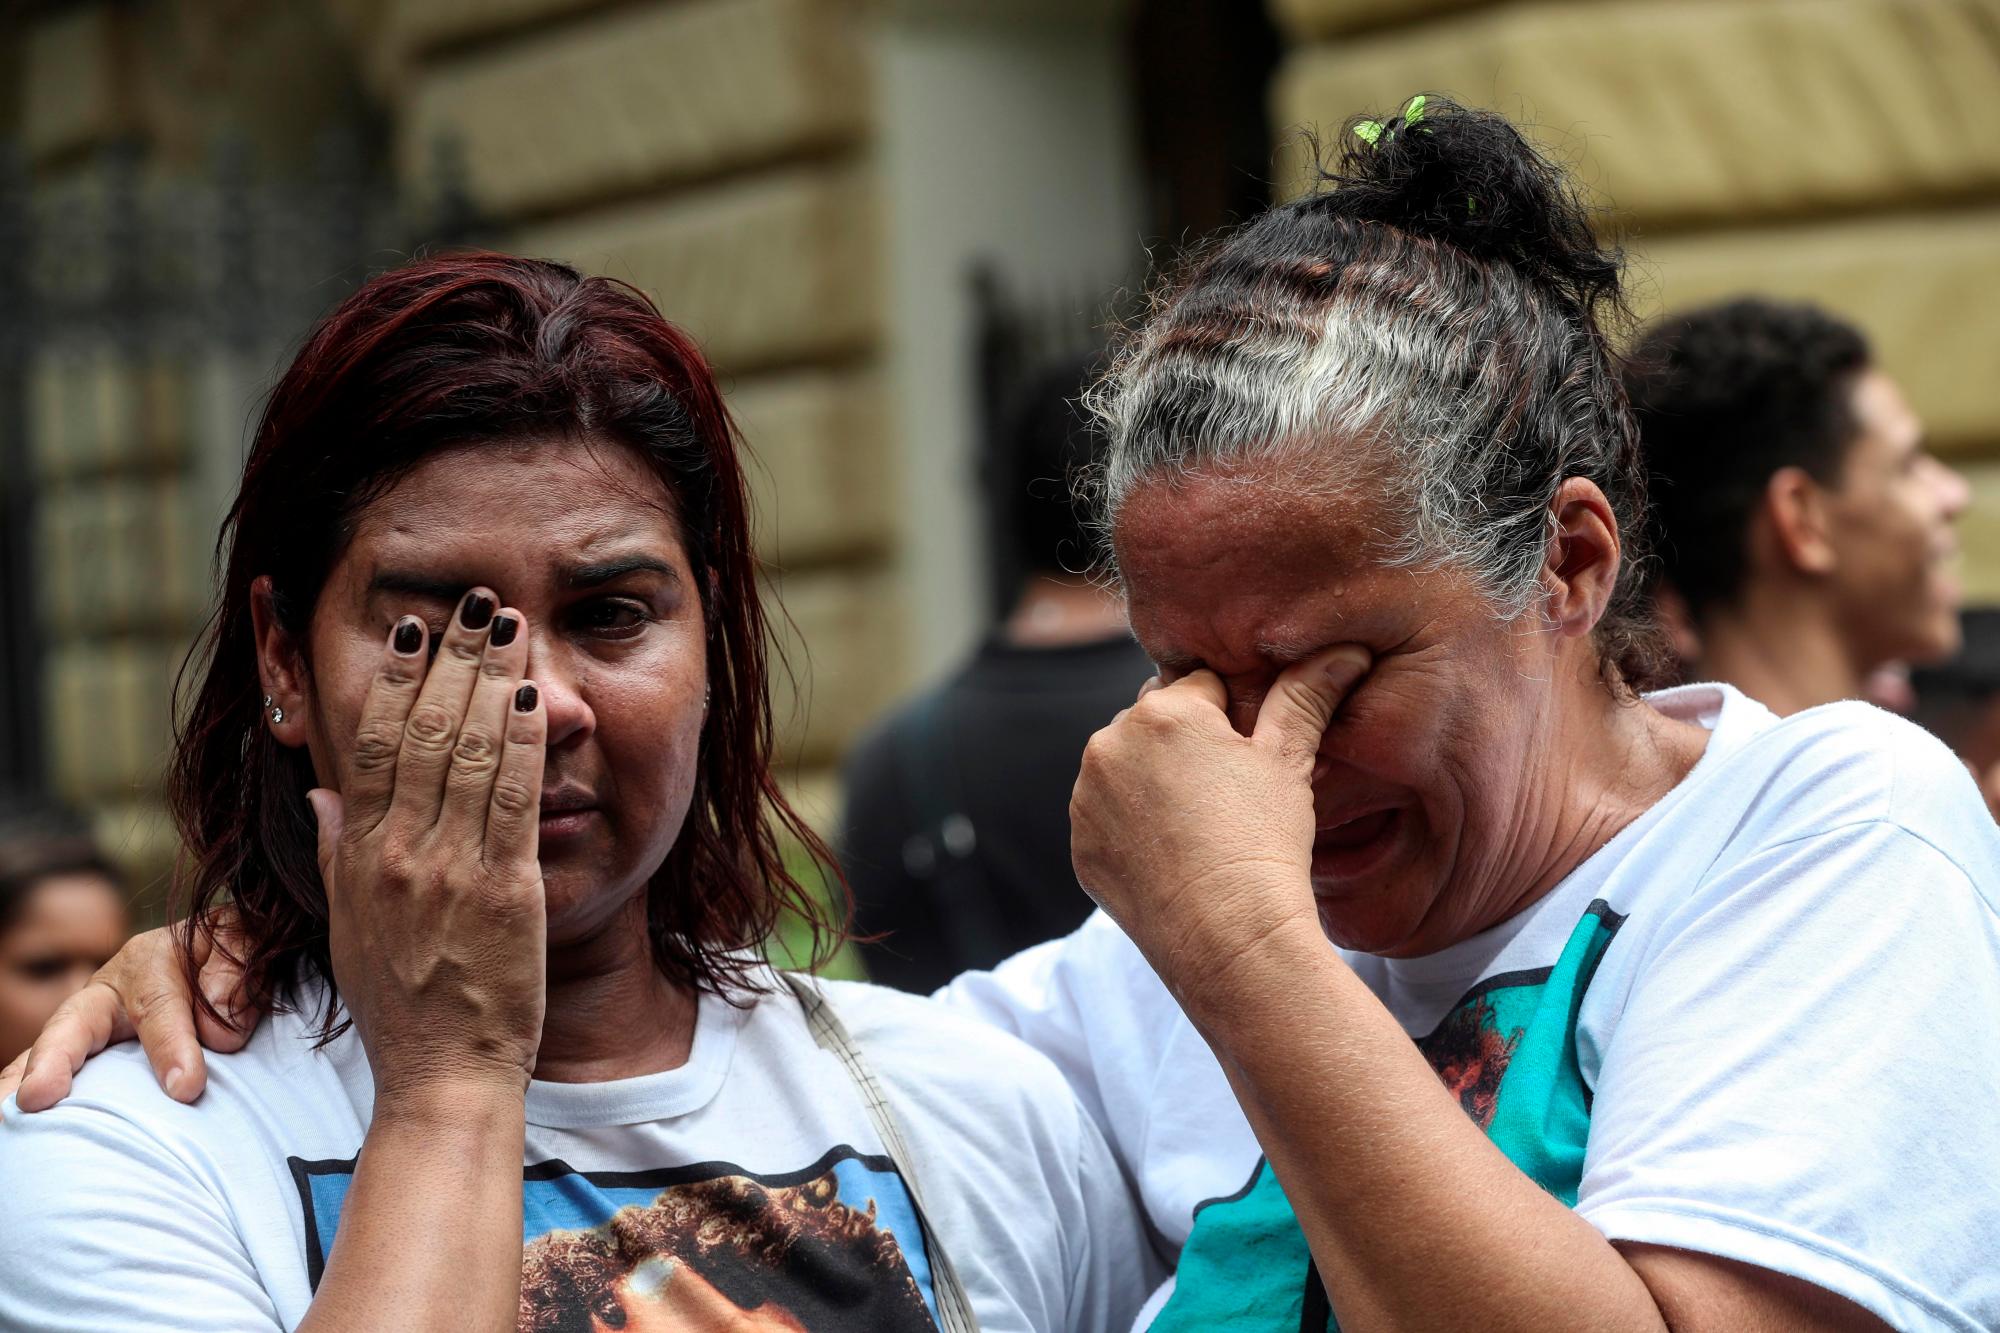 Miembros de la ONG Río de Paz realizan una manifestación para exigir al gobierno del estado de Río de Janeiro el pago de una indemnización a favor de la familia de la niña María Eduarda, de apenas 13 años, que murió por una bala perdida el 30 de marzo de 2017, en una escuela pública durante una acción de la Policía Militar